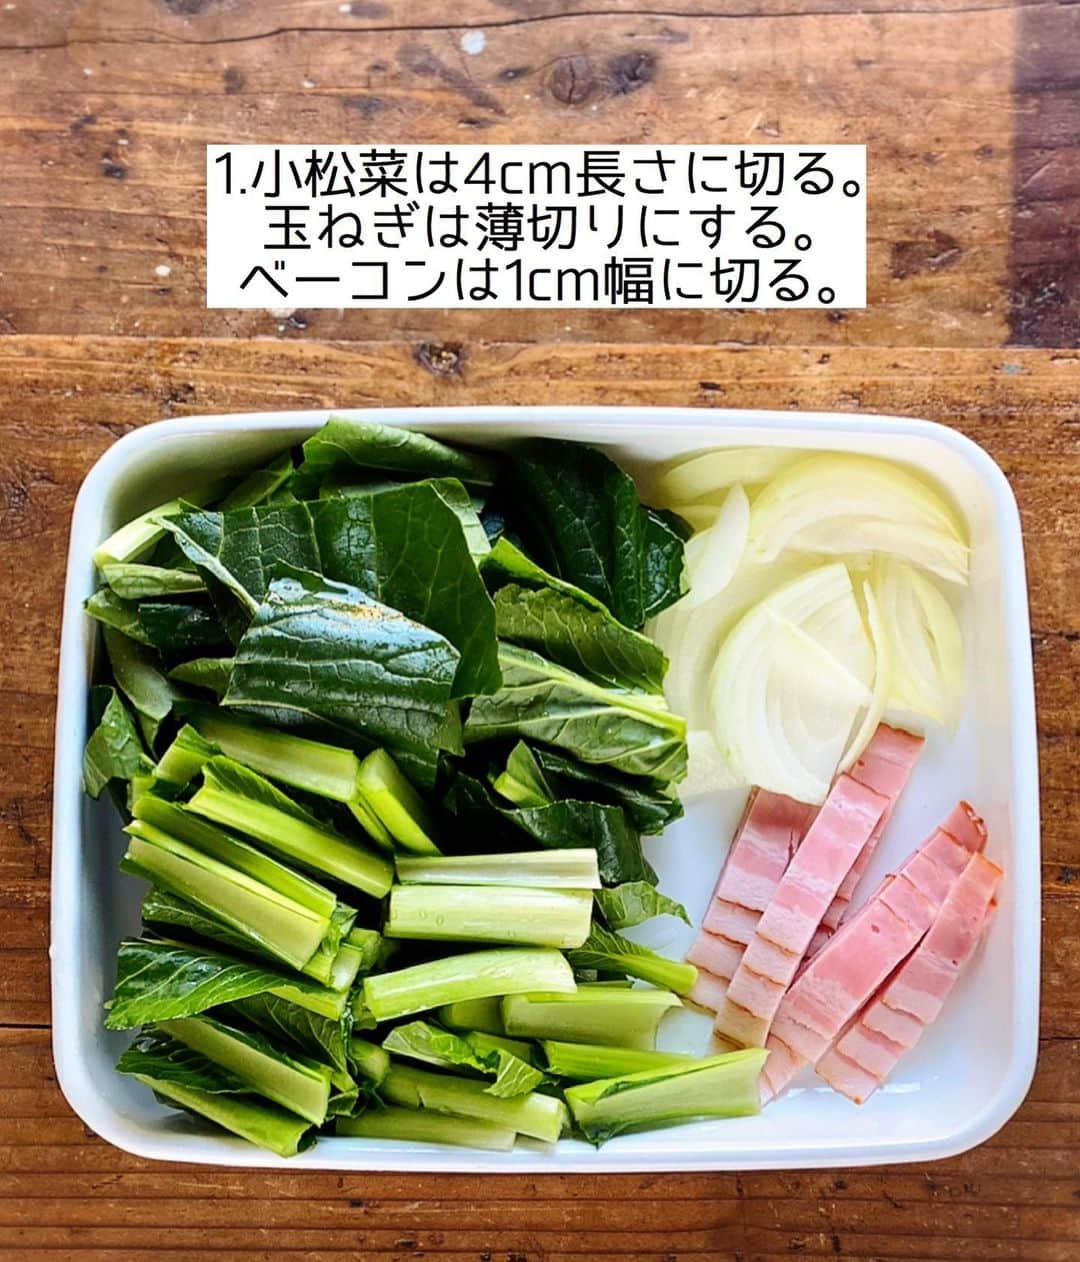 Mizuki【料理ブロガー・簡単レシピ】さんのインスタグラム写真 - (Mizuki【料理ブロガー・簡単レシピ】Instagram)「・﻿ 【#レシピ 】ーーーーーーーーー﻿ ♡小松菜とゆで卵のグラタン♡﻿ ーーーーーーーーーーーーーーー﻿ ﻿ ﻿ ﻿ おはようございます(*^^*)﻿ ﻿ 今日ご紹介させていただくのは﻿ \ 小松菜とゆで卵のグラタン /﻿ ﻿ 具沢山で食べ応え十分♡﻿ 野菜をたっぷり加えて﻿ ヘルシーに仕上げました♩﻿ 生クリーム&ホワイトソース不要の﻿ 簡単お手軽レシピです(*´艸`)﻿ ﻿ 好みでマカロニを加えたり﻿ ごはんにかけてドリアにしたりと﻿ アレンジもお試し下さいね(*^^*)﻿ ﻿ ﻿ ﻿ ＿＿＿＿＿＿＿＿＿＿＿＿＿＿＿＿＿＿＿＿﻿ 【2人分】﻿ 小松菜...1束(200g)﻿ 玉ねぎ...1/4個﻿ ベーコン...2枚﻿ ゆで卵...2個﻿ バター...10g﻿ 薄力粉...大2﻿ 牛乳...300ml﻿ ●コンソメ...小1/2﻿ ●塩こしょう...少々﻿ ピザ用チーズ...60g﻿ ﻿ 1.小松菜は4cm長さに切る。玉ねぎは薄切りにする。ベーコンは1cm幅に切る。﻿ 2.フライパンにバターを中火で熱して1を炒める。野菜がしんなりしたら薄力粉を加え、弱めの中火で1分炒める。﻿ 3.牛乳を3回に分けて加え、その都度よく混ぜる。●を加えて混ぜて溶かし、とろみが付くまで煮る。﻿ 4.耐熱皿に入れ、スライスしたゆで卵とチーズをのせ、トースターで焼き色が付くまで焼く。﻿ ￣￣￣￣￣￣￣￣￣￣￣￣￣￣￣￣￣￣￣￣﻿ ﻿ ﻿ ﻿ ﻿ 《ポイント》﻿ ♦︎マカロニを加える場合は別茹でし、牛乳の後に加えて下さい♩﻿ ♦︎薄力粉を加えたら火加減を落とし、1分間しっかり炒めてから牛乳を加えて下さい♩﻿ ♦︎生クリームを加える場合は牛乳の一部(100mlくらい)を置き換えると◎﻿ ﻿ ﻿ ﻿ ﻿ ﻿ ﻿ ﻿ 📕新刊発売中📕﻿ 【ラクしておいしい！#1品晩ごはん 】﻿ ￣￣￣￣￣￣￣￣￣￣￣￣￣￣￣￣￣﻿ 私たちだってヘトヘトな日がある•••﻿ 毎日何品も作っていられない•••﻿ もうごはんに悩みたくない😢﻿ そんな時、1品ごはんはいかがでしょう？﻿ というご提案です✨﻿ ﻿ 【1品ごはん】は﻿ 副菜いらずで全てがシンプル！﻿ ￣￣￣￣￣￣￣￣￣￣￣￣￣￣￣￣￣￣﻿ 一品つくるだけでいいから﻿ 献立を考えなくてよし！﻿ ￣￣￣￣￣￣￣￣￣￣￣￣￣￣￣￣￣￣﻿ 悩まない、疲れない、﻿ 気力や時間がなくてもなんとかなる！﻿ ￣￣￣￣￣￣￣￣￣￣￣￣￣￣￣￣￣￣﻿ そんな頼りになる﻿ 便利なお助けごはんです☺️💕﻿ (ハイライトに🔗貼っています✨)﻿ ￣￣￣￣￣￣￣￣￣￣￣￣￣￣￣￣￣﻿ ﻿ ﻿ ﻿ ﻿ ﻿ ⭐️発売中⭐️﻿ ＿＿＿＿＿＿＿＿＿＿＿＿＿＿＿＿＿＿﻿ しんどくない献立、考えました♩﻿ \15分でいただきます/﻿ 📕#Mizukiの2品献立 📕﻿ ﻿ 和食をもっとカジュアルに♩﻿ \毎日のごはんがラクになる/﻿ 📘#Mizukiの今どき和食 📘﻿ ﻿ ホケミレシピの決定版♩﻿ \はじめてでも失敗しない/﻿ 📙#ホットケーキミックスのお菓子 📙﻿ ﻿ NHKまる得マガジンテキスト☆﻿ ホットケーキミックスで﻿ 📗絶品おやつ&意外なランチ📗﻿ ￣￣￣￣￣￣￣￣￣￣￣￣￣￣￣￣￣￣﻿ ﻿ ﻿ ﻿ ＿＿＿＿＿＿＿＿＿＿＿＿＿＿＿＿＿＿﻿ レシピを作って下さった際や﻿ レシピ本についてのご投稿には﻿ タグ付け( @mizuki_31cafe )して﻿ お知らせいただけると嬉しいです😊💕﻿ ￣￣￣￣￣￣￣￣￣￣￣￣￣￣￣￣￣￣﻿ ﻿ ﻿ ﻿ ﻿ #グラタン#小松菜#ゆで卵#生クリームなし#Mizuki#簡単レシピ#時短レシピ#節約レシピ#料理#フーディーテーブル#マカロニメイト#おうちごはん#デリスタグラマー#料理好きな人と繋がりたい#おうちごはんlover#写真好きな人と繋がりたい#foodpic#cooking#recipe#lin_stagrammer#foodporn#yummy#f52grams#小松菜とゆで卵のグラタンm」1月11日 10時43分 - mizuki_31cafe